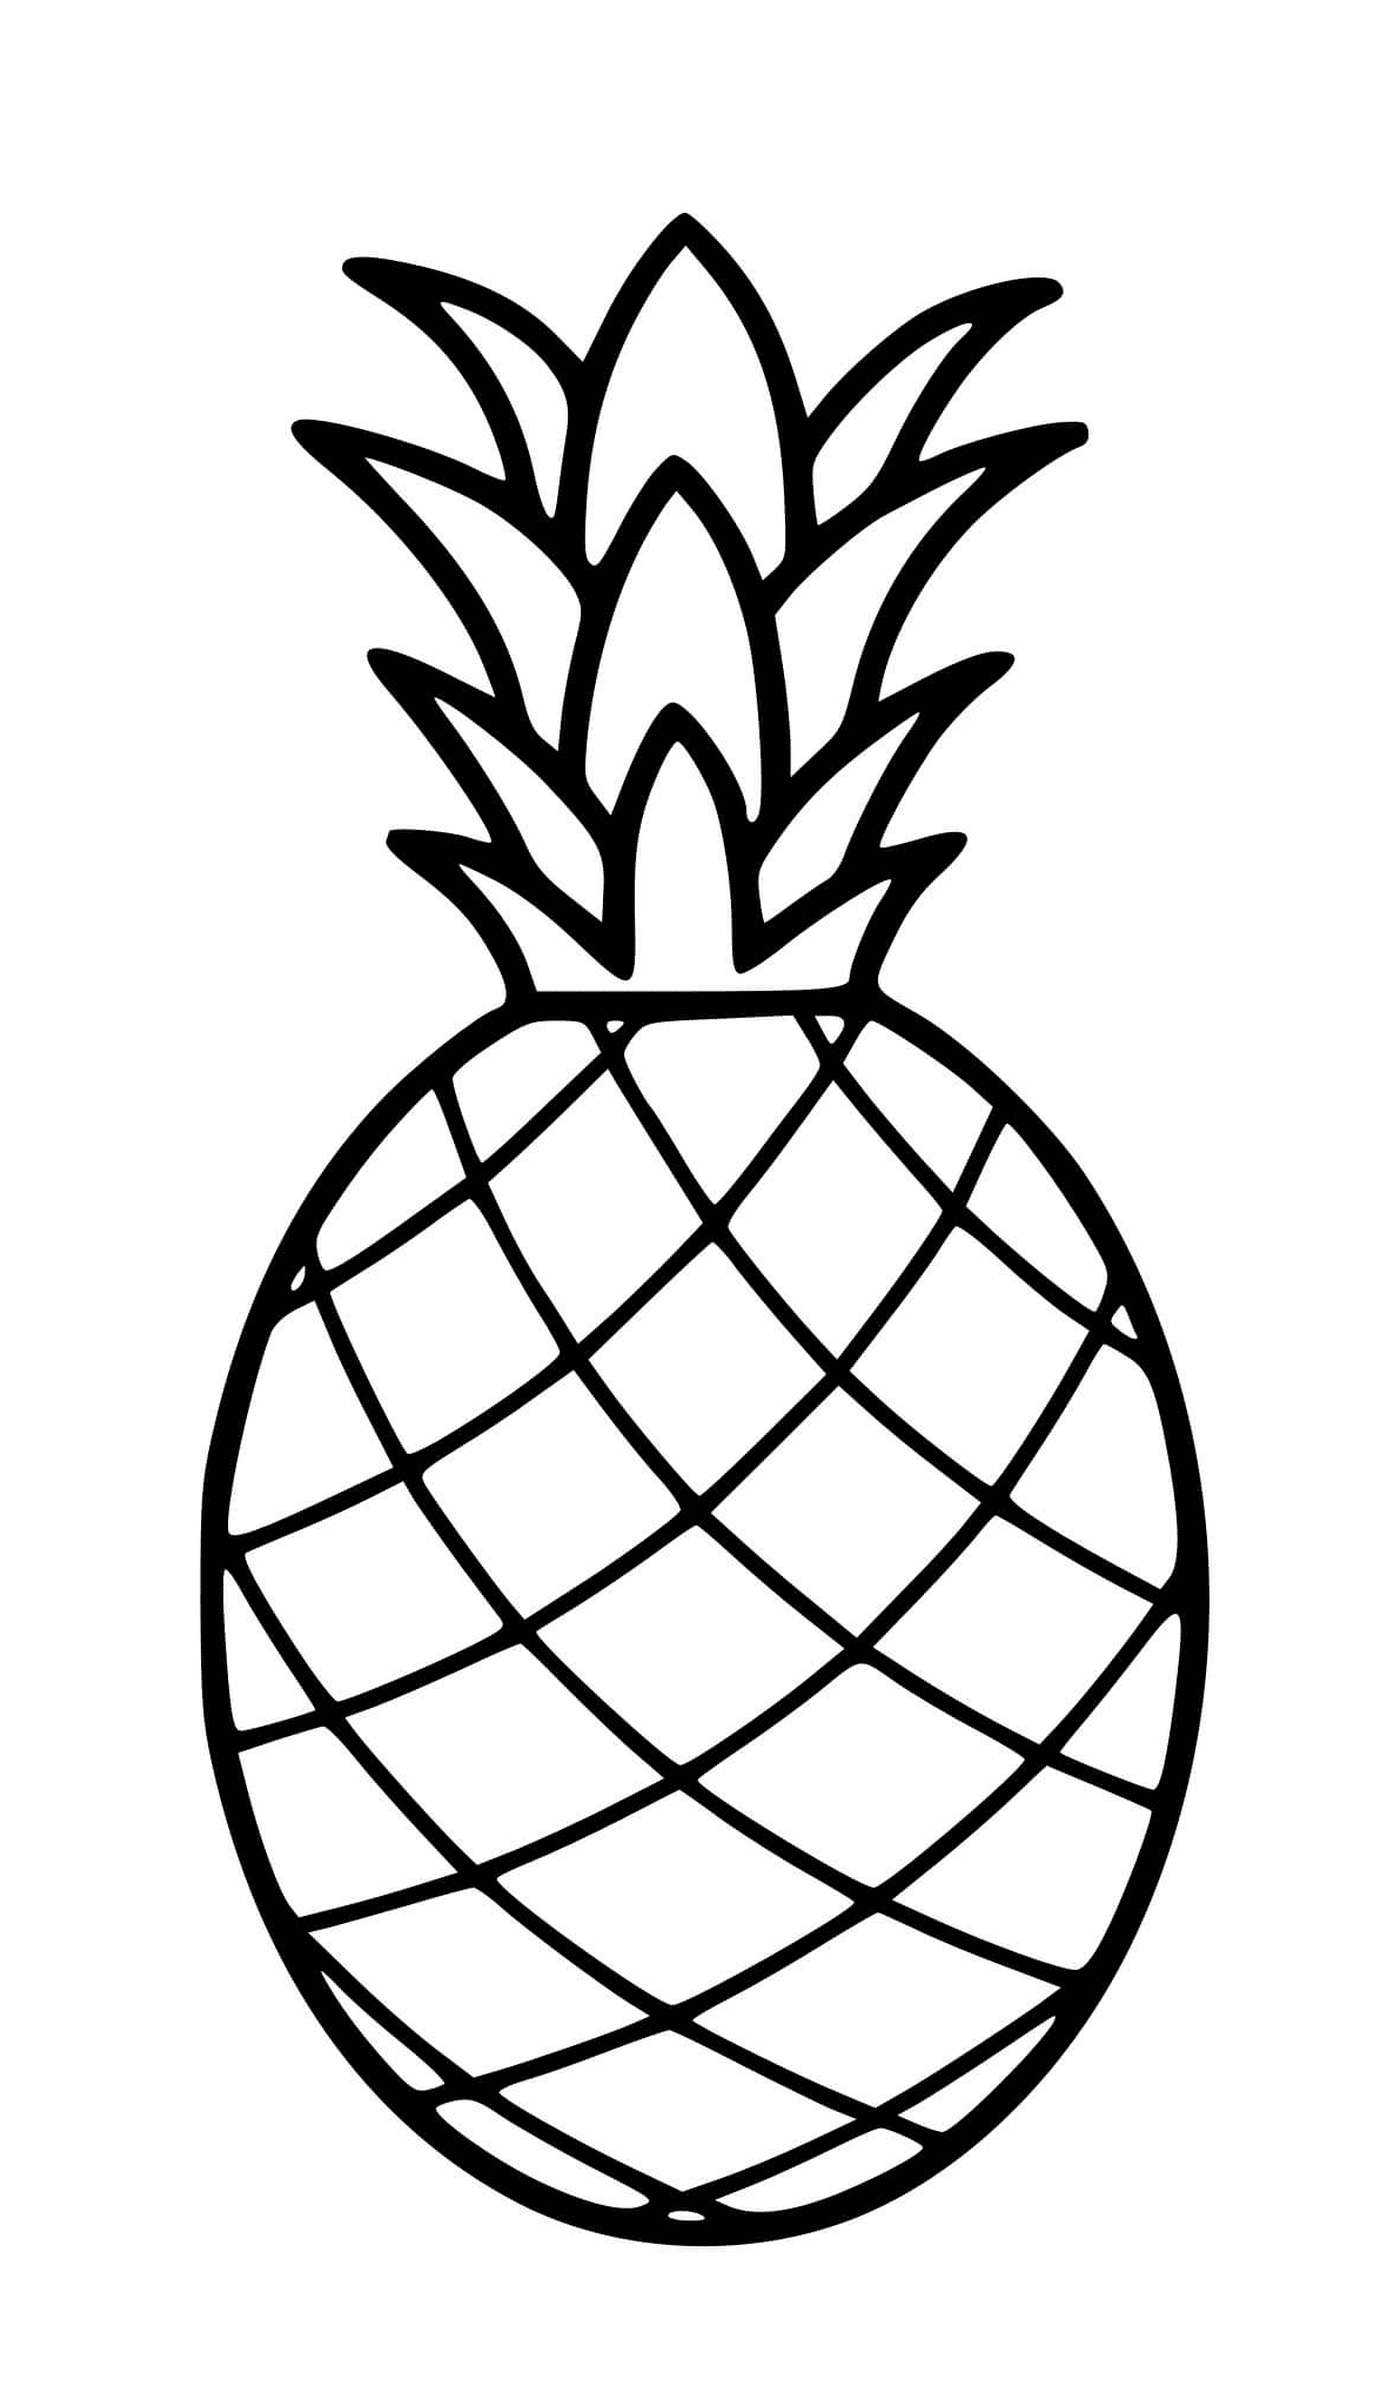  Um abacaxi desenhado realisticamente 